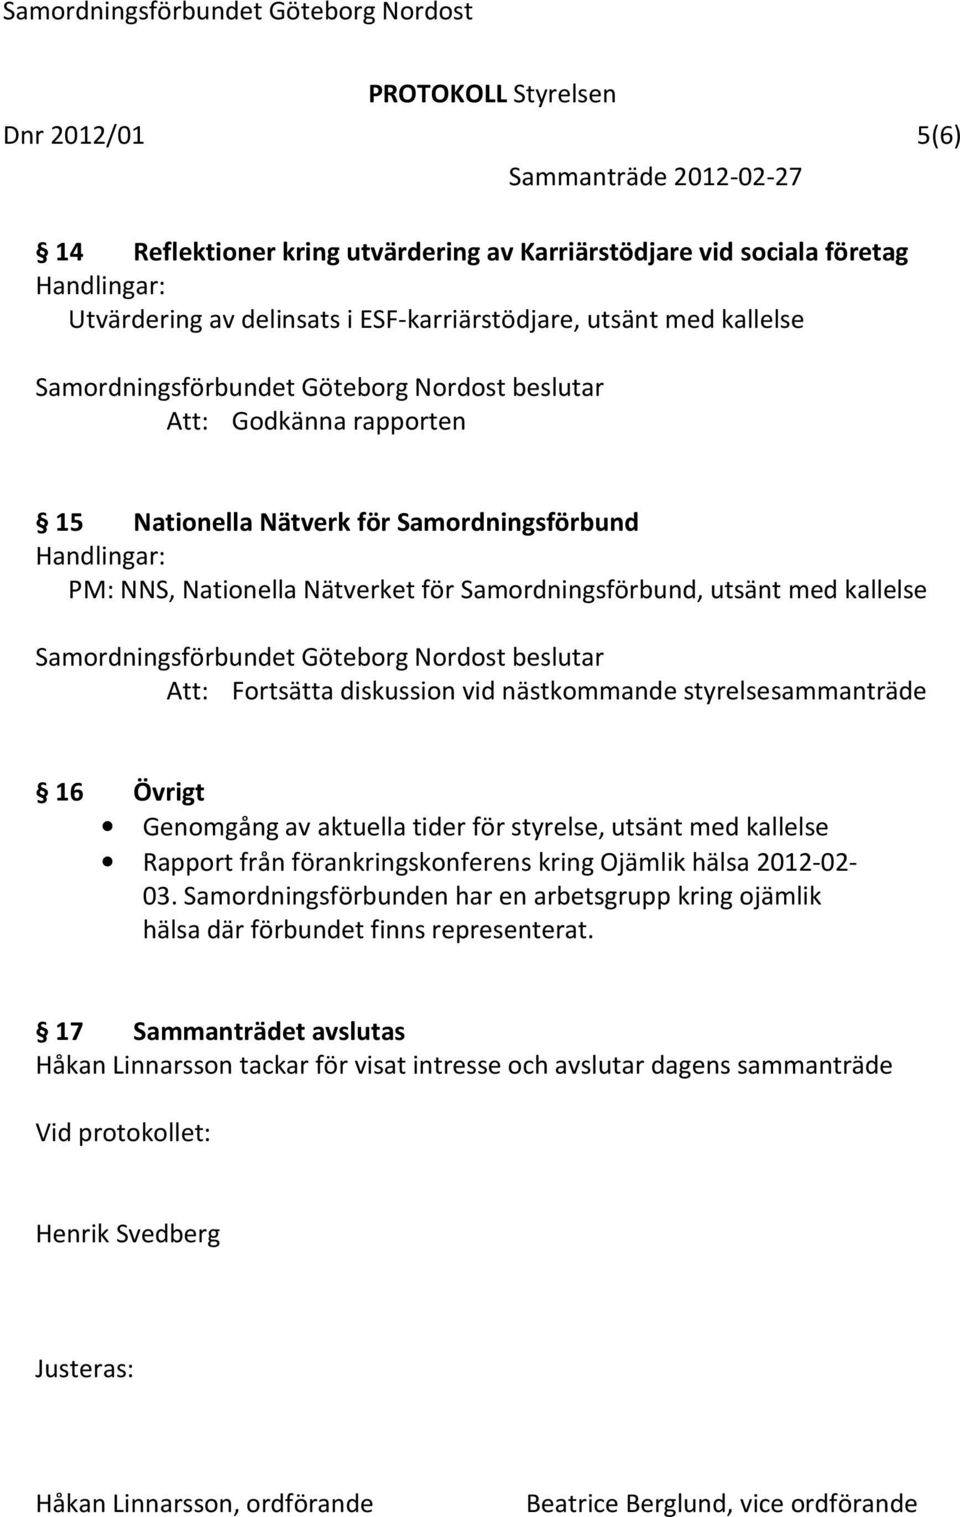 tider för styrelse, utsänt med kallelse Rapport från förankringskonferens kring Ojämlik hälsa 2012-02- 03.